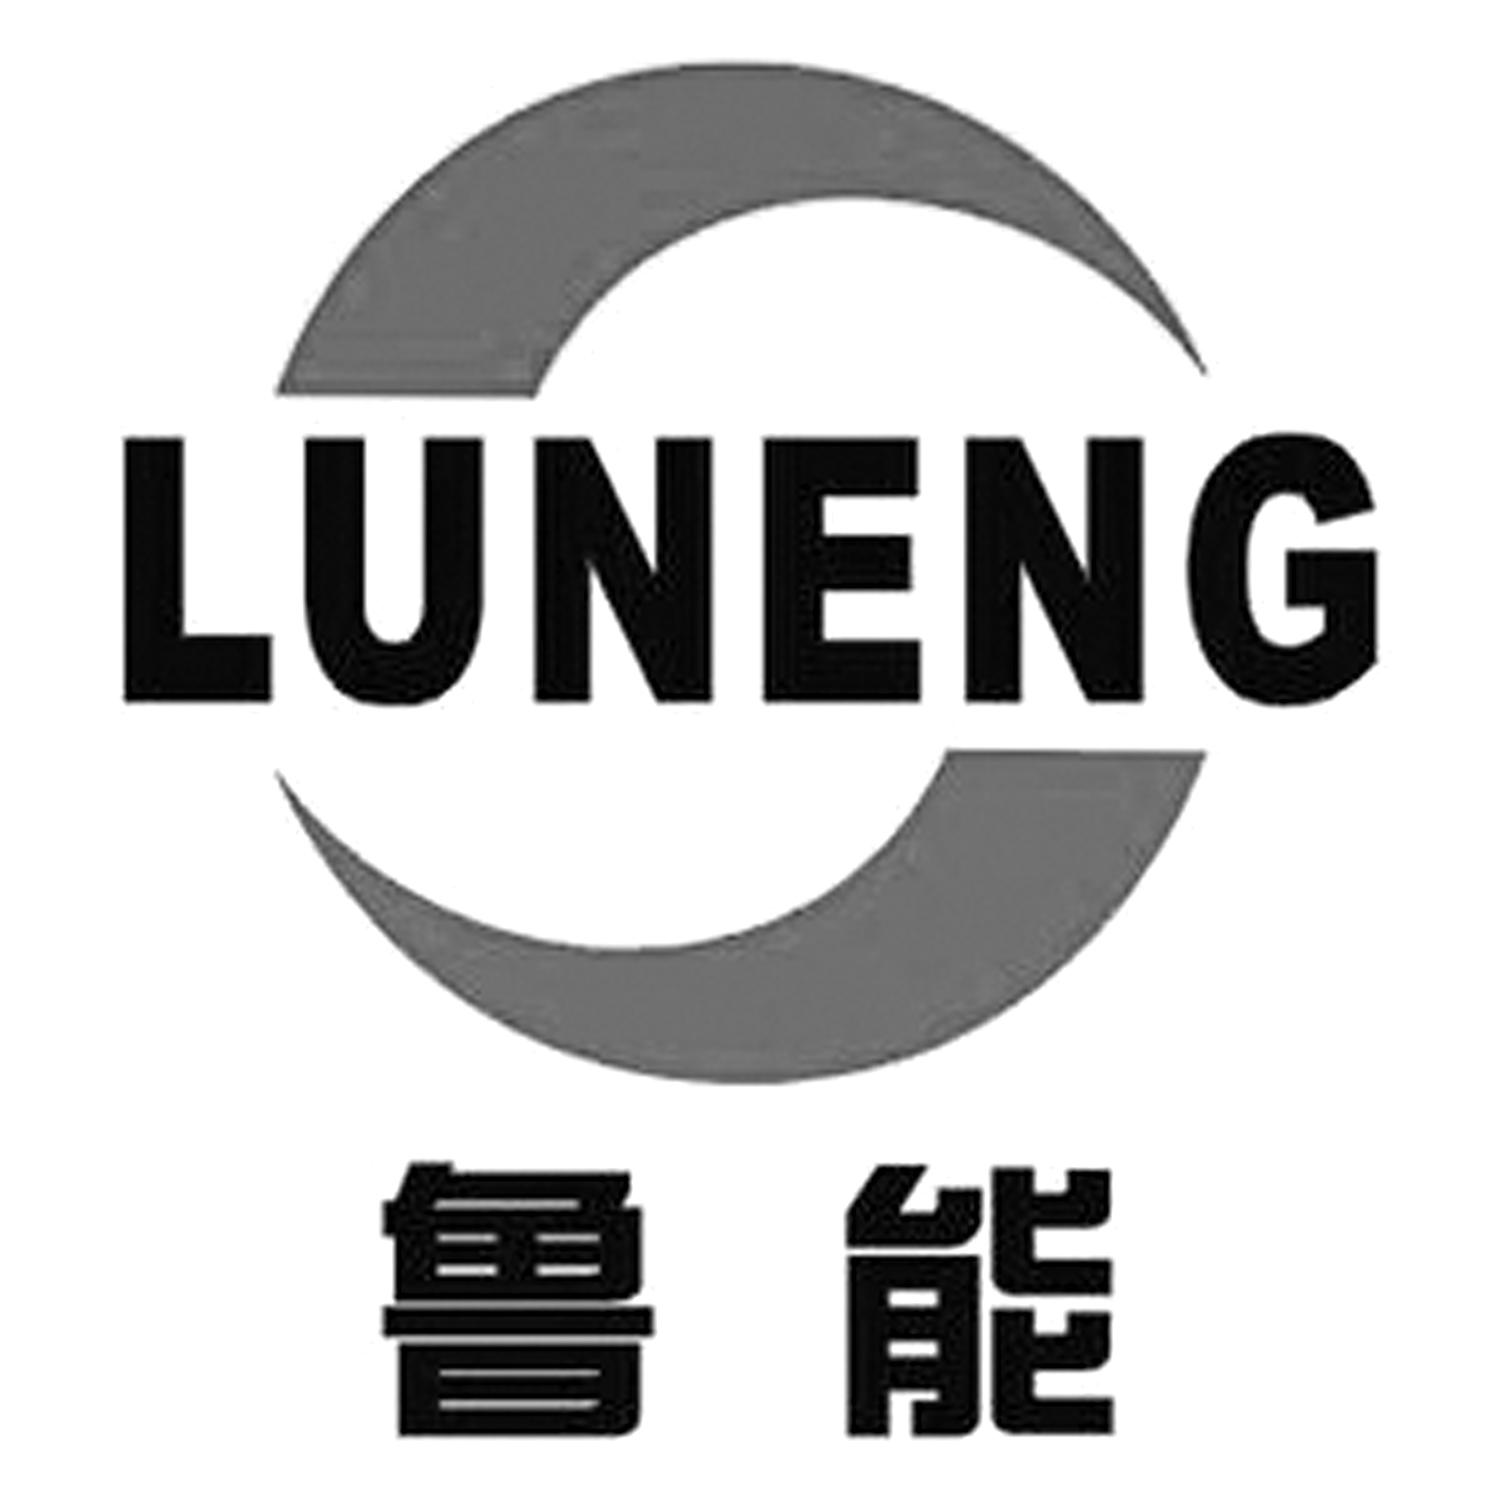 鲁能地产logo图片